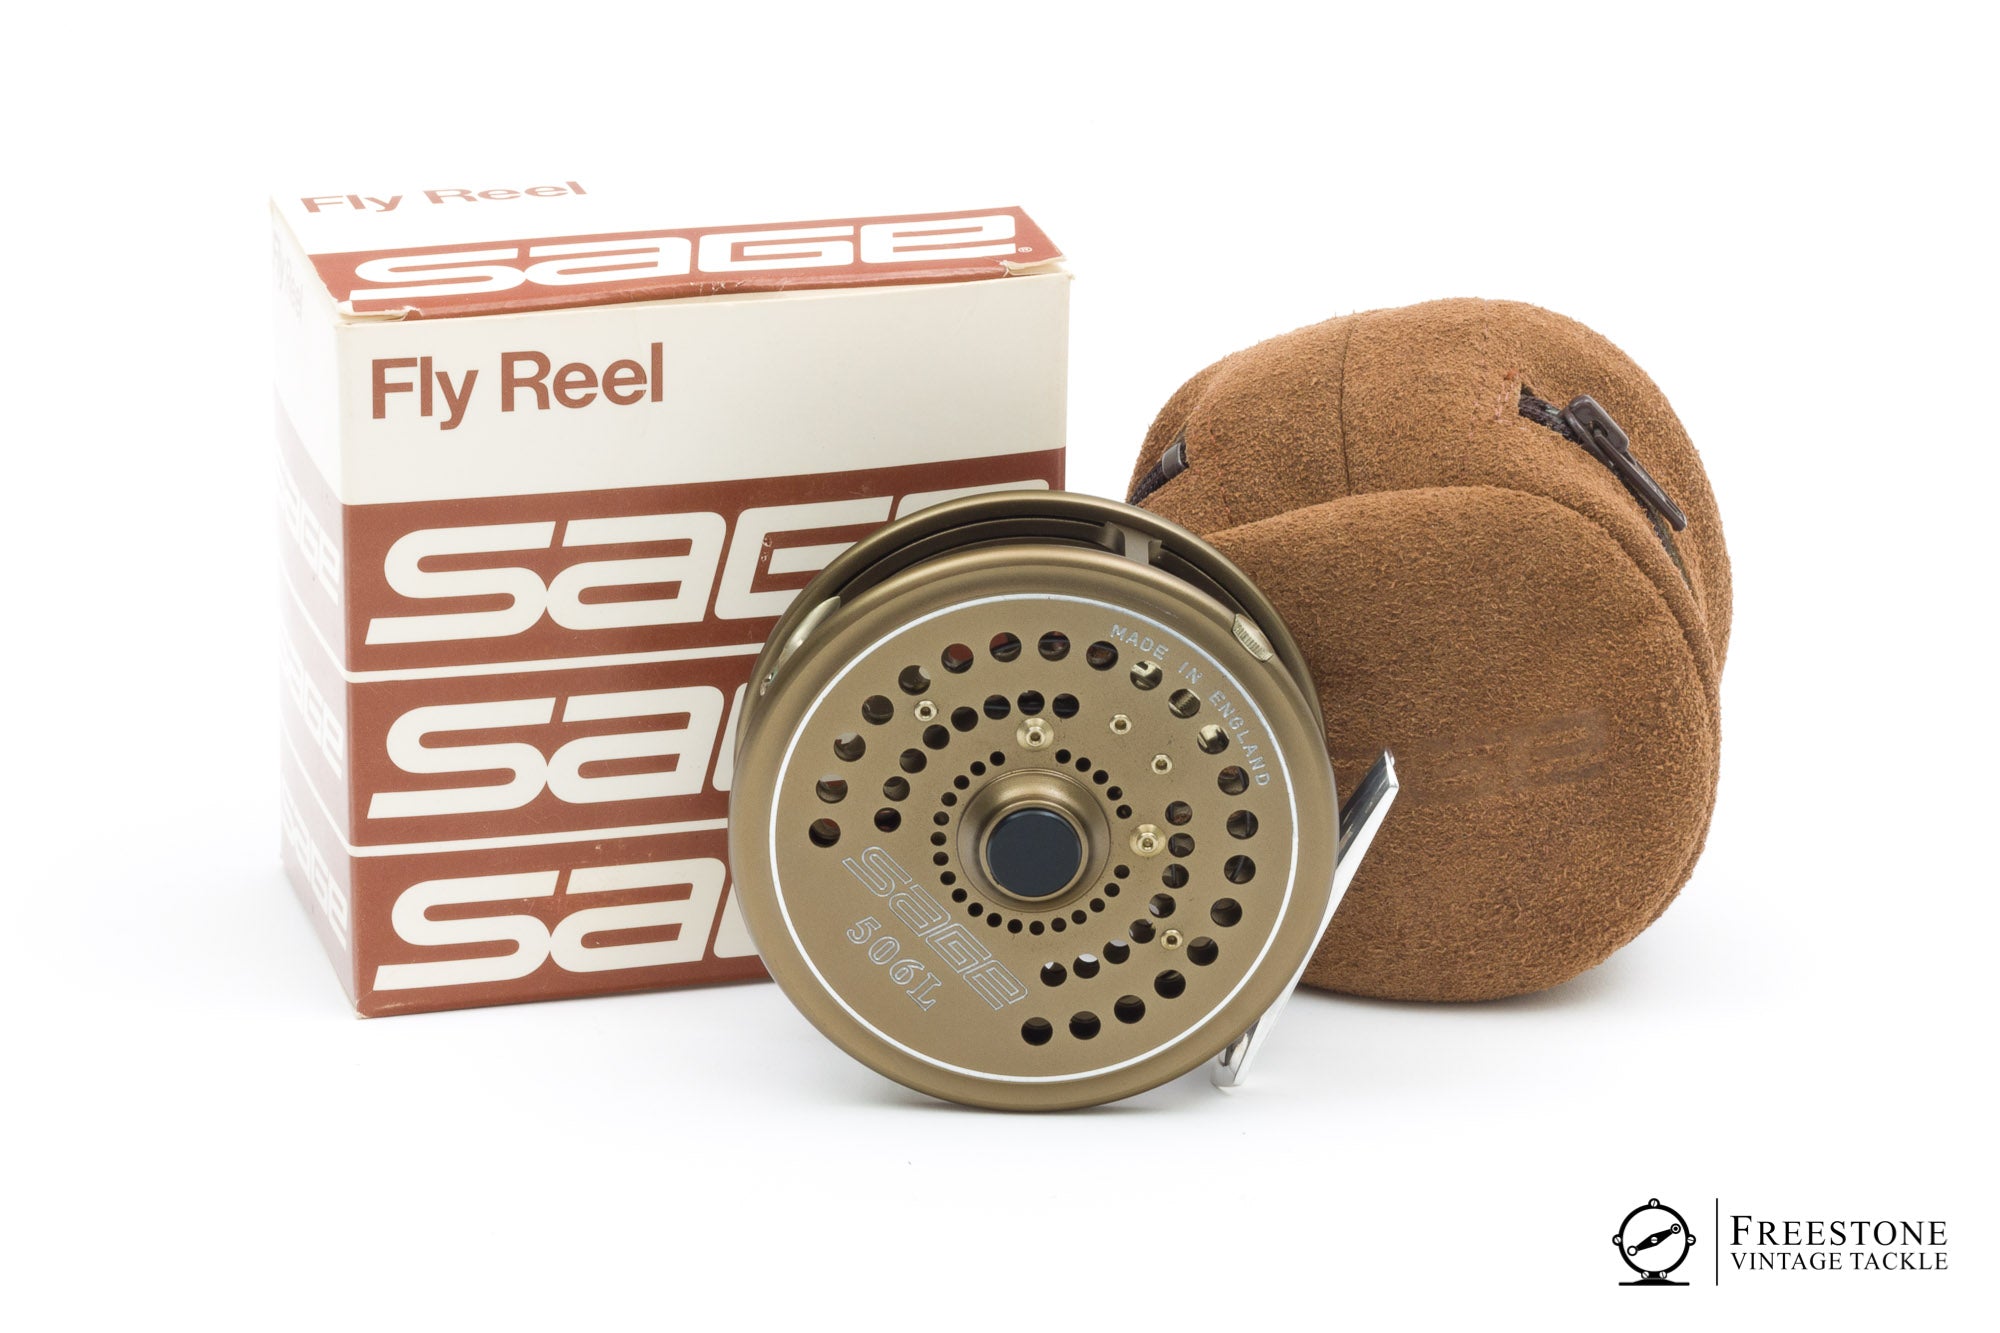 Peerless - No. 1 1/2, 3 Fly Reel - Freestone Vintage Tackle